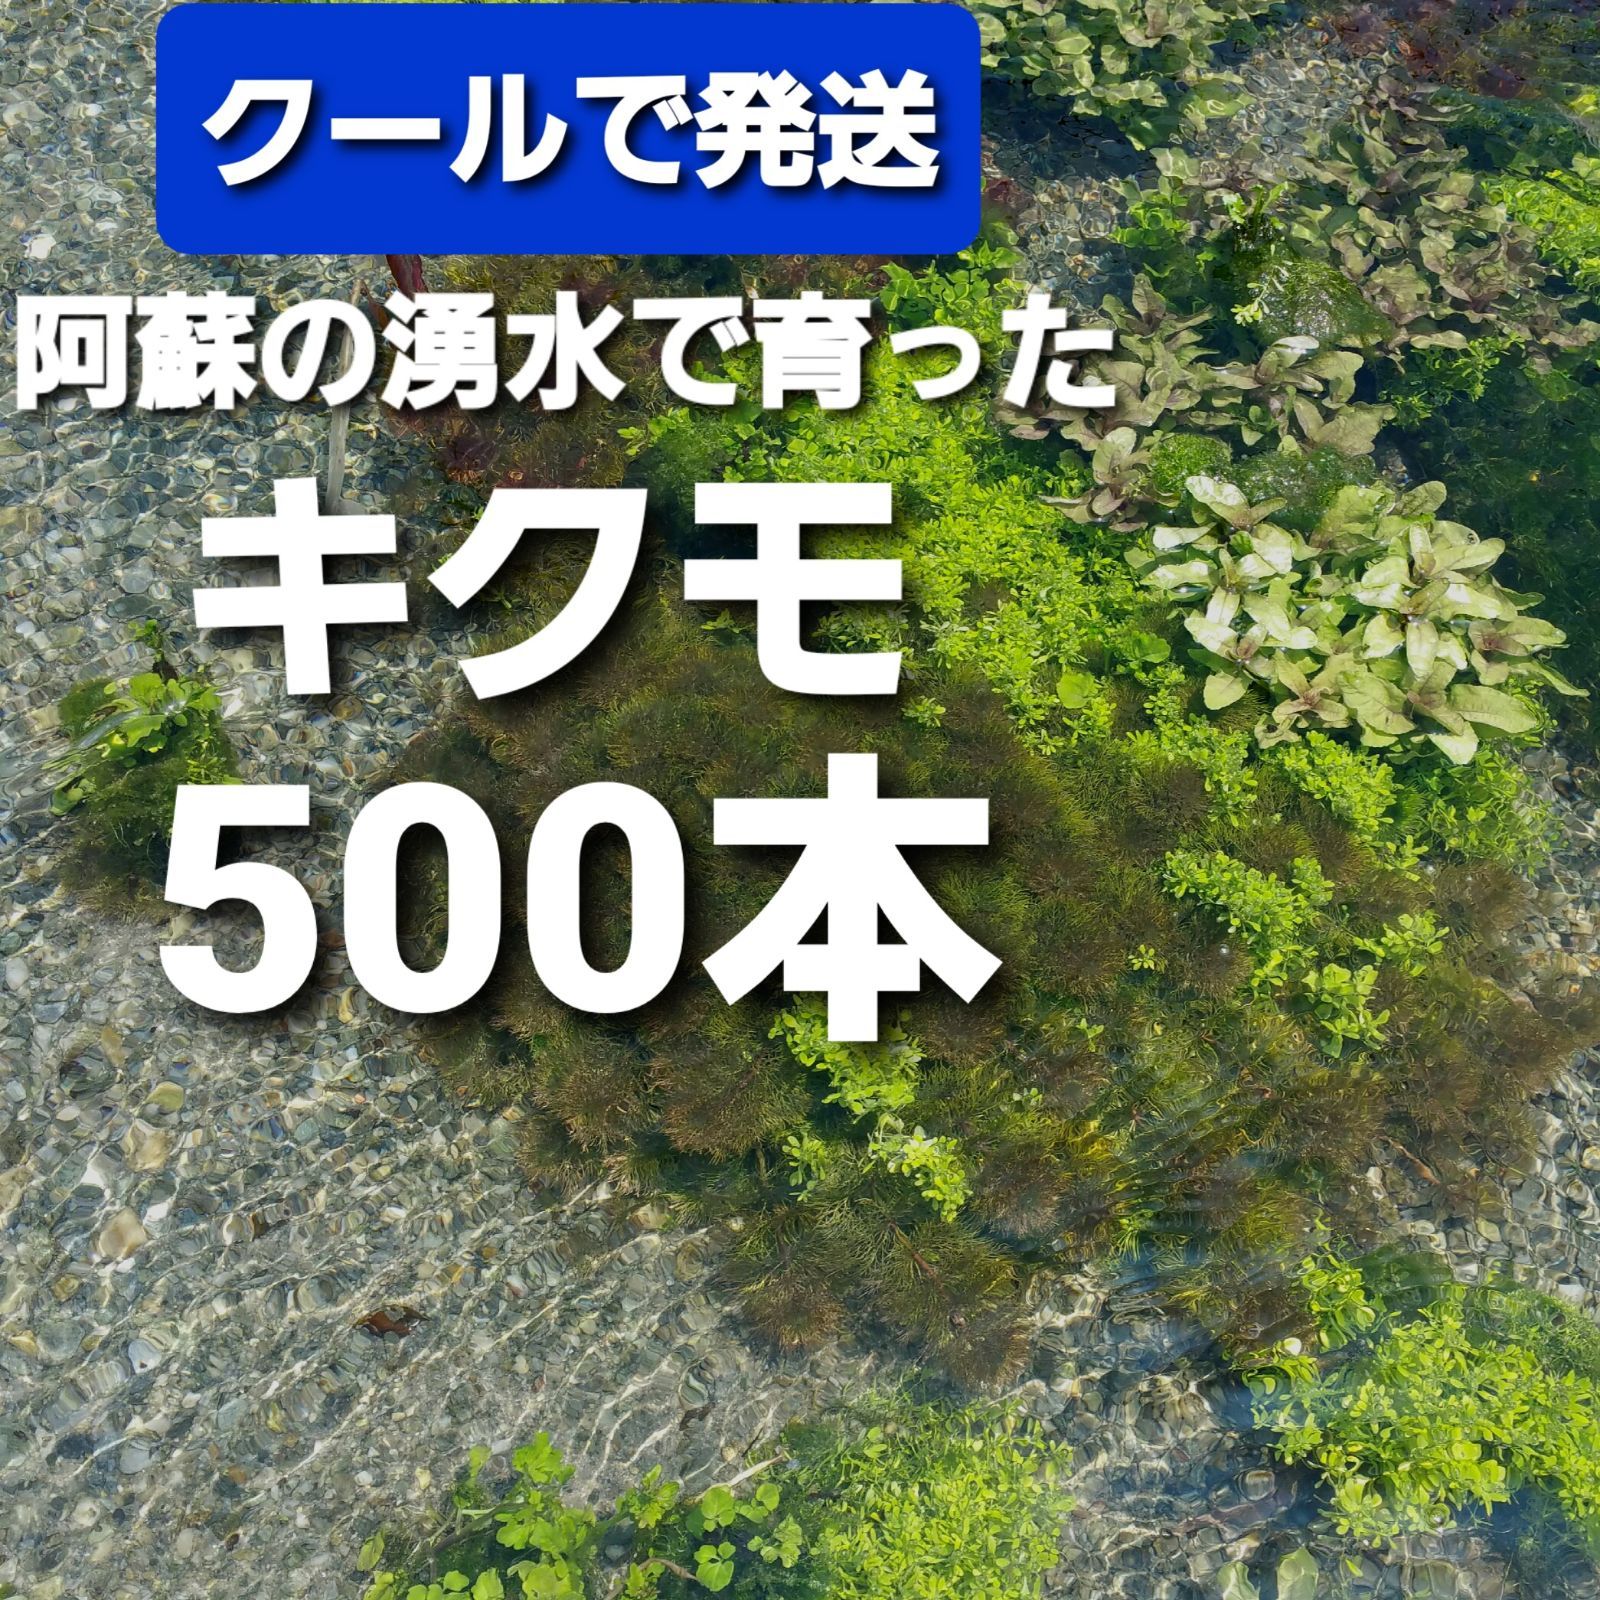 クールで発送 キクモ 500本以上 阿蘇の湧水で育った日本の水草 在来種アンブリア【アナカリス も販売中】